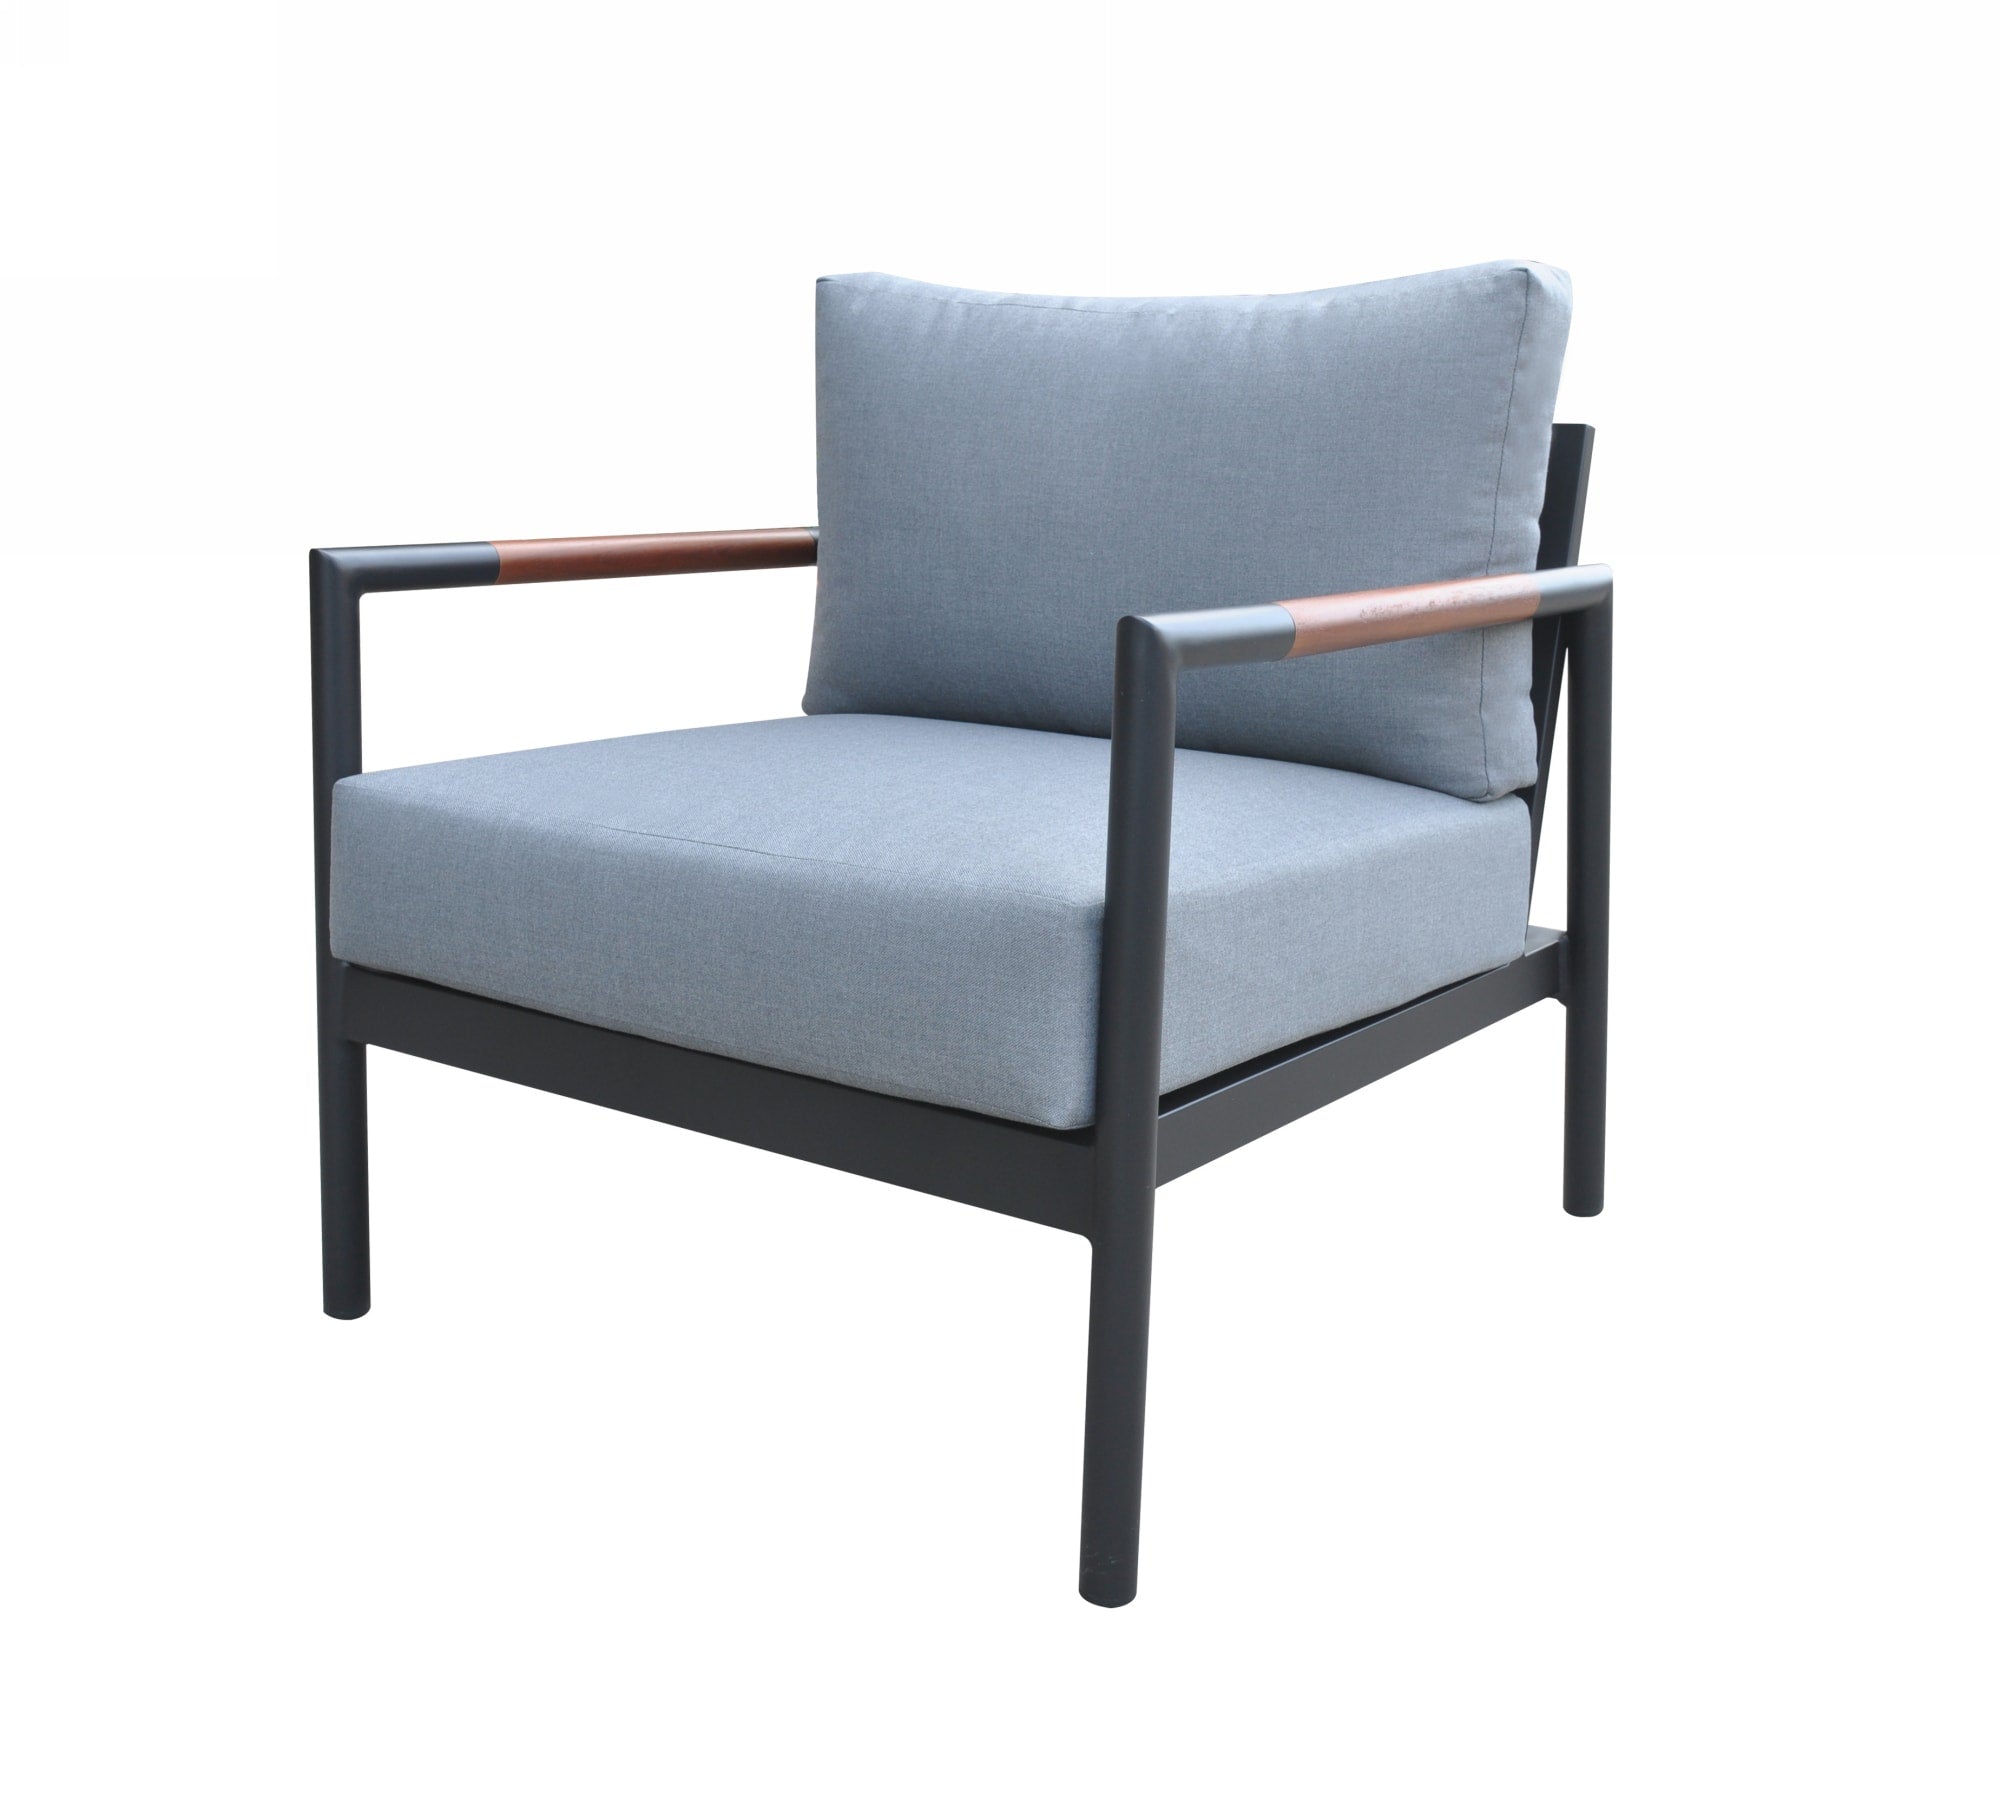 Renava Kiowa - Modern Outdoor Grey & Black Sofa Set-Outdoor Set-VIG-Wall2Wall Furnishings